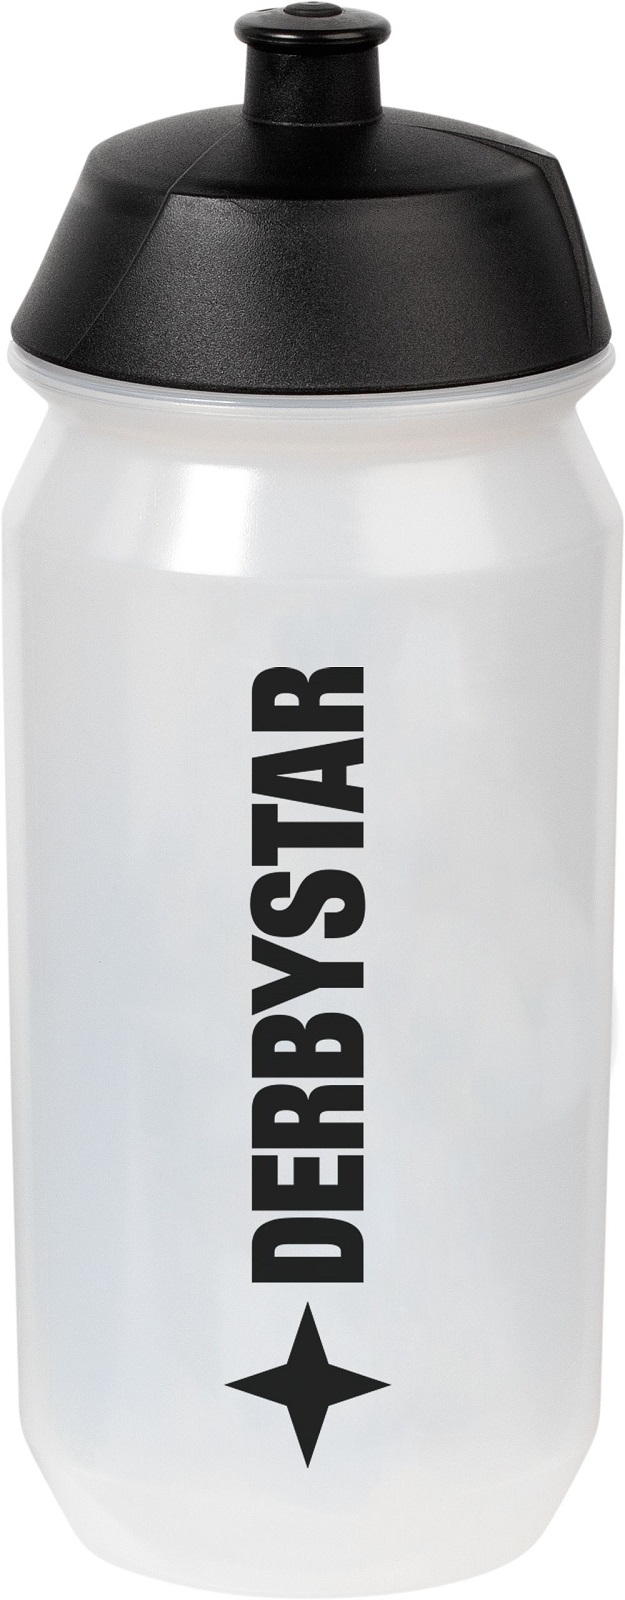 Derbystar Trinkflasche Bio-Bottle 0,5l